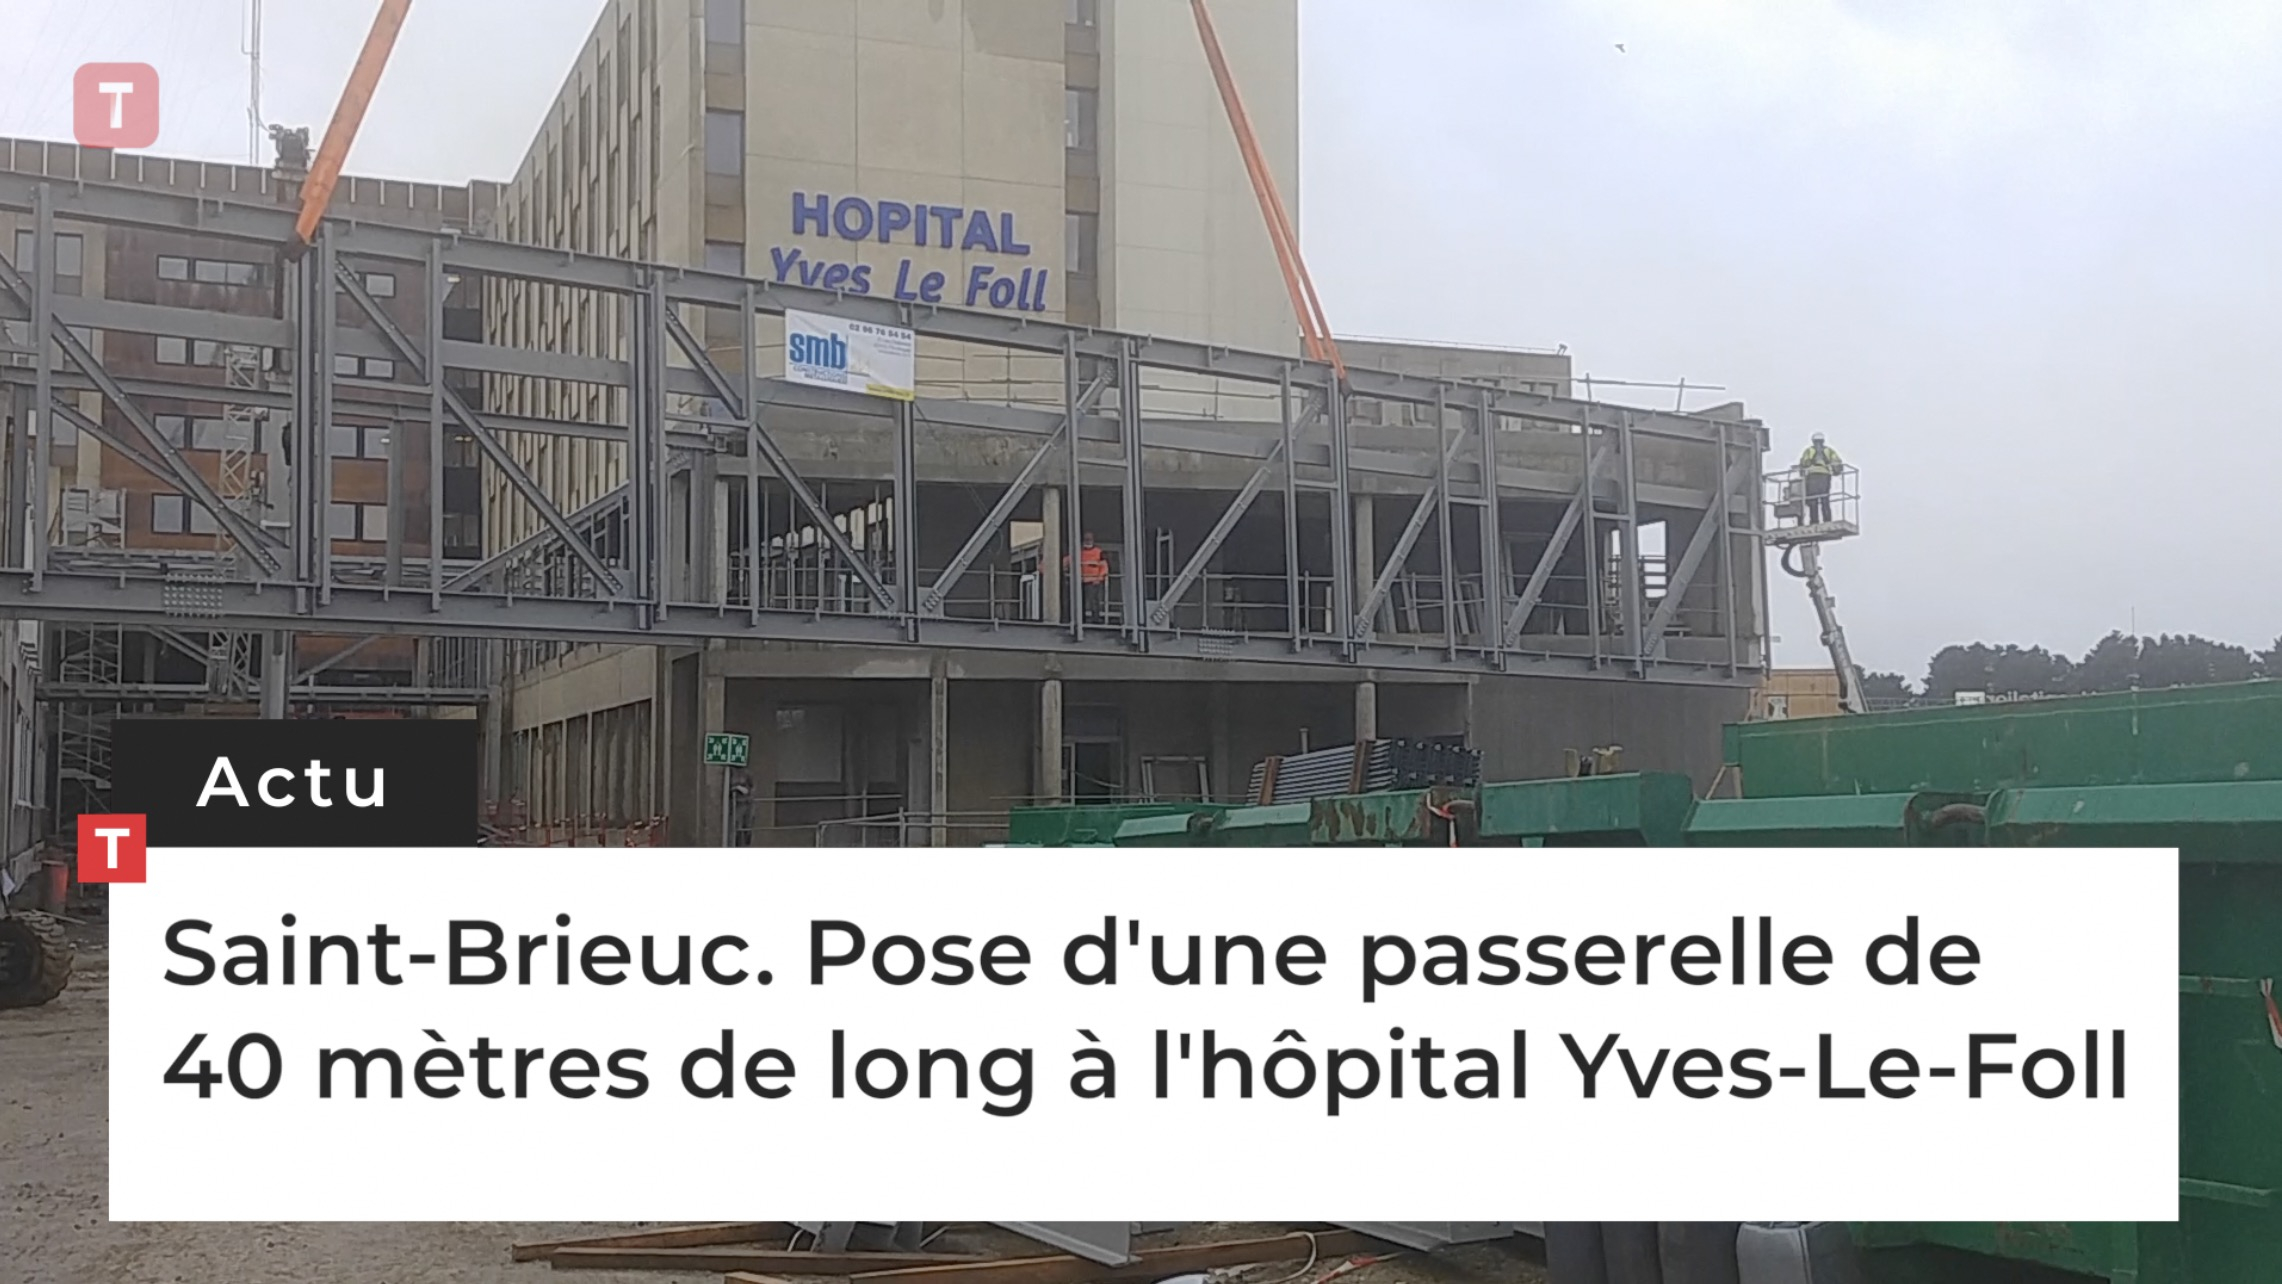 Saint-Brieuc. Pose d'une passerelle de 40 mètres de long à l'hôpital Yves-Le-Foll (Le Télégramme)